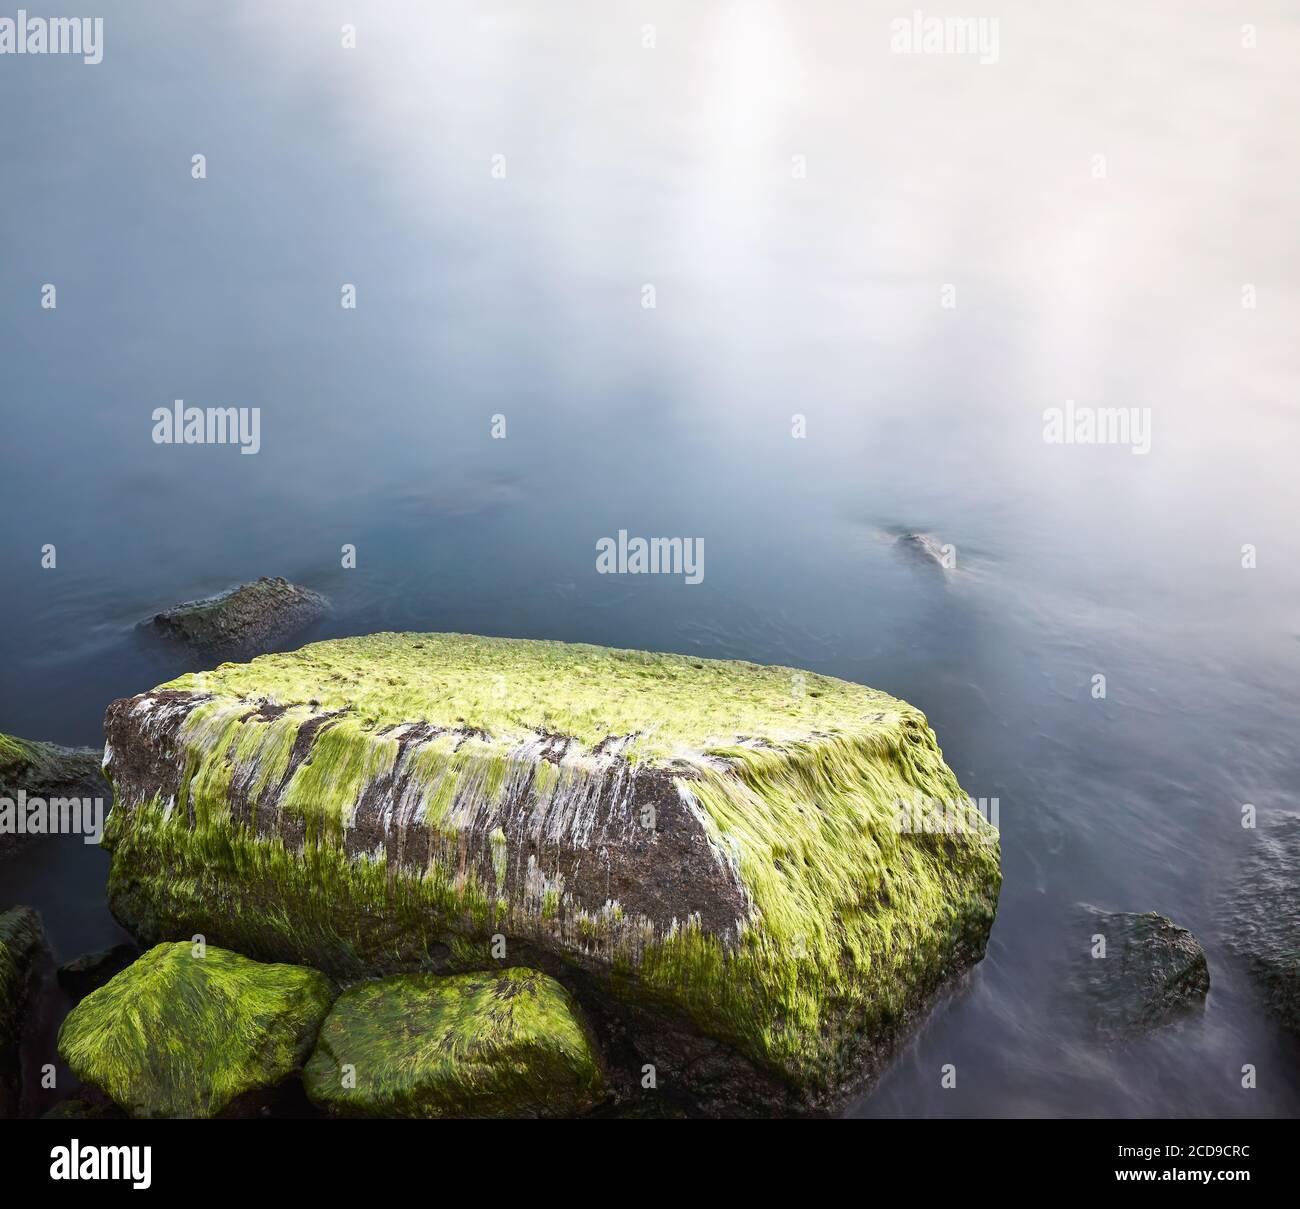 Steine mit grünen Algen im Wasser bedeckt, Langzeitbelichtung Bild. Stockfoto